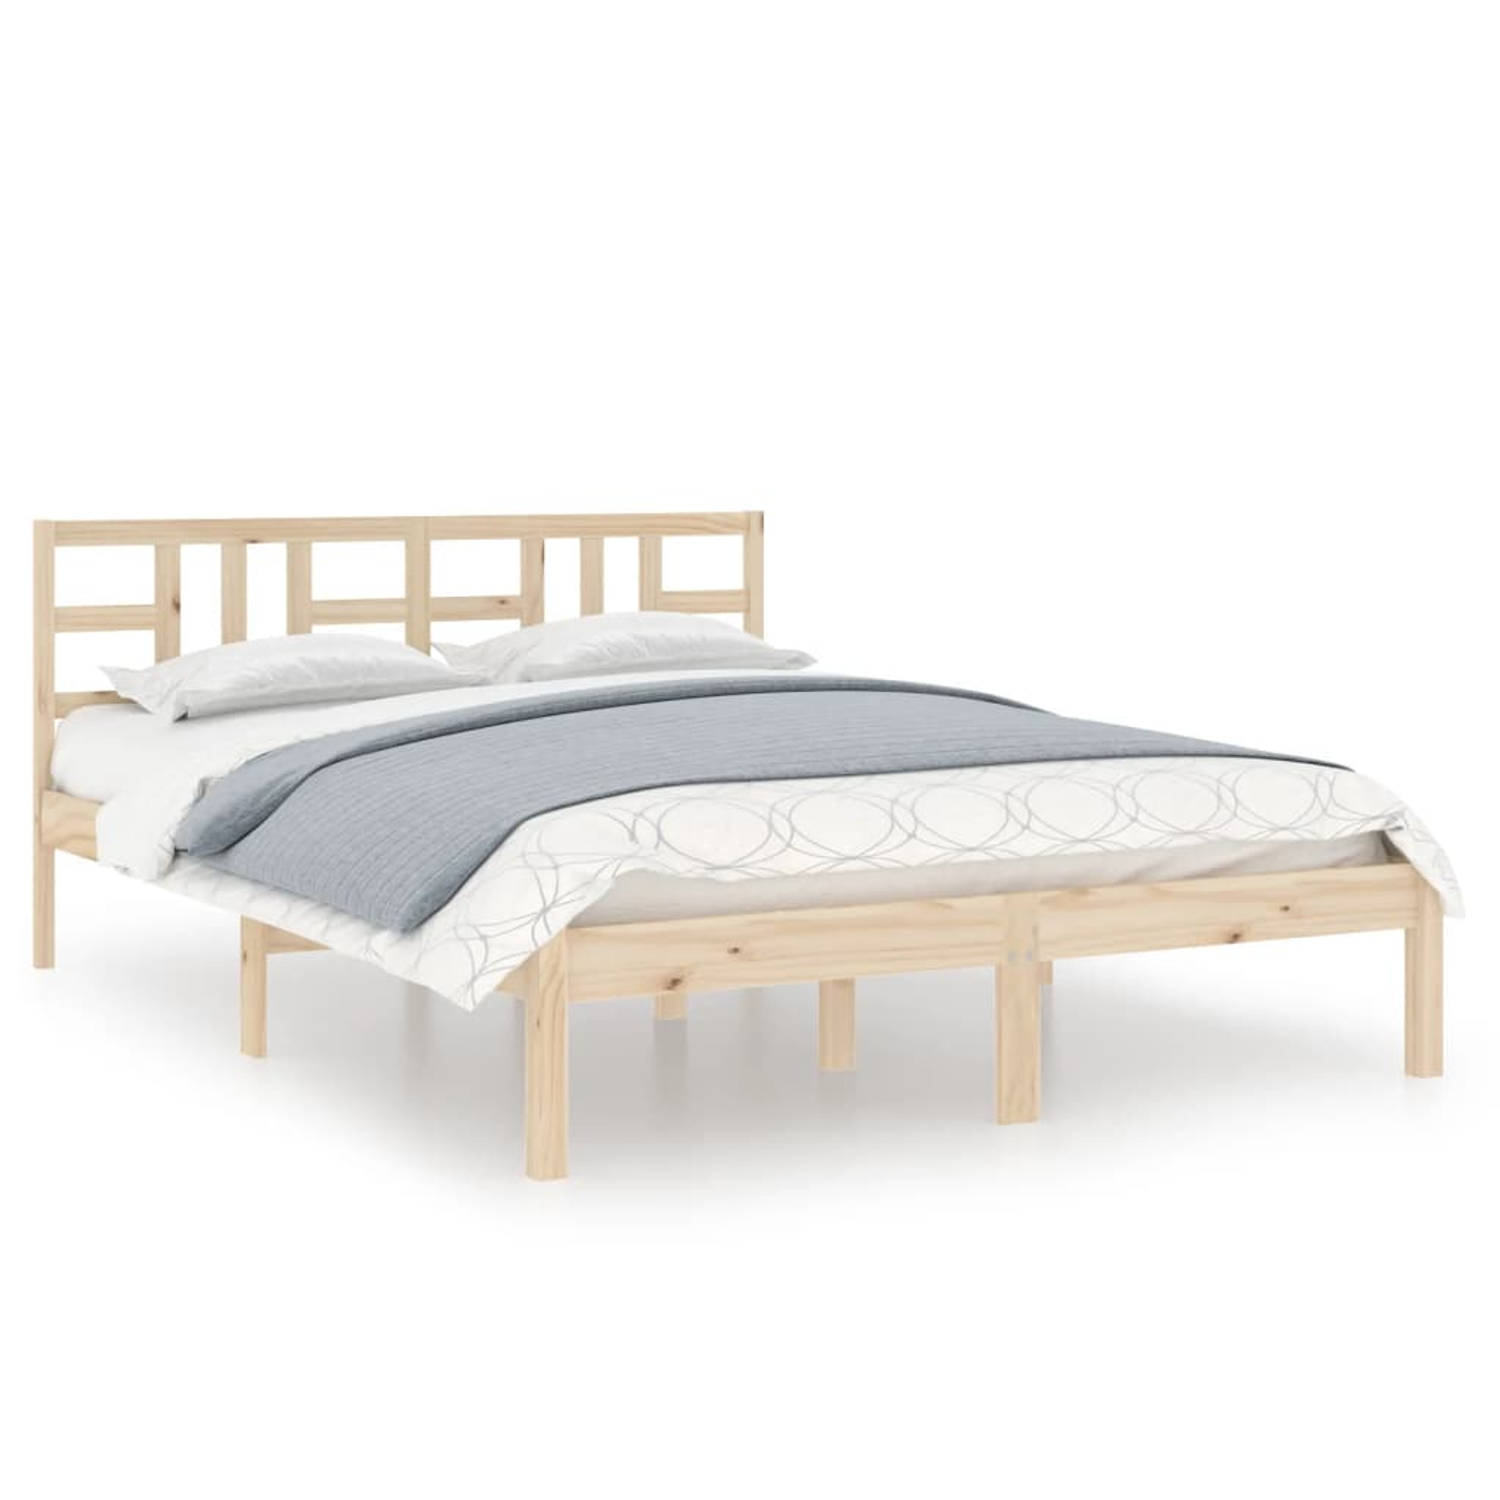 The Living Store Bedframe massief hout 120x200 cm - Bedframe - Bedframes - Tweepersoonsbed - Bed - Bedombouw - Dubbel Bed - Frame - Bed Frame - Ledikant - Houten Bedframe - Tweeper